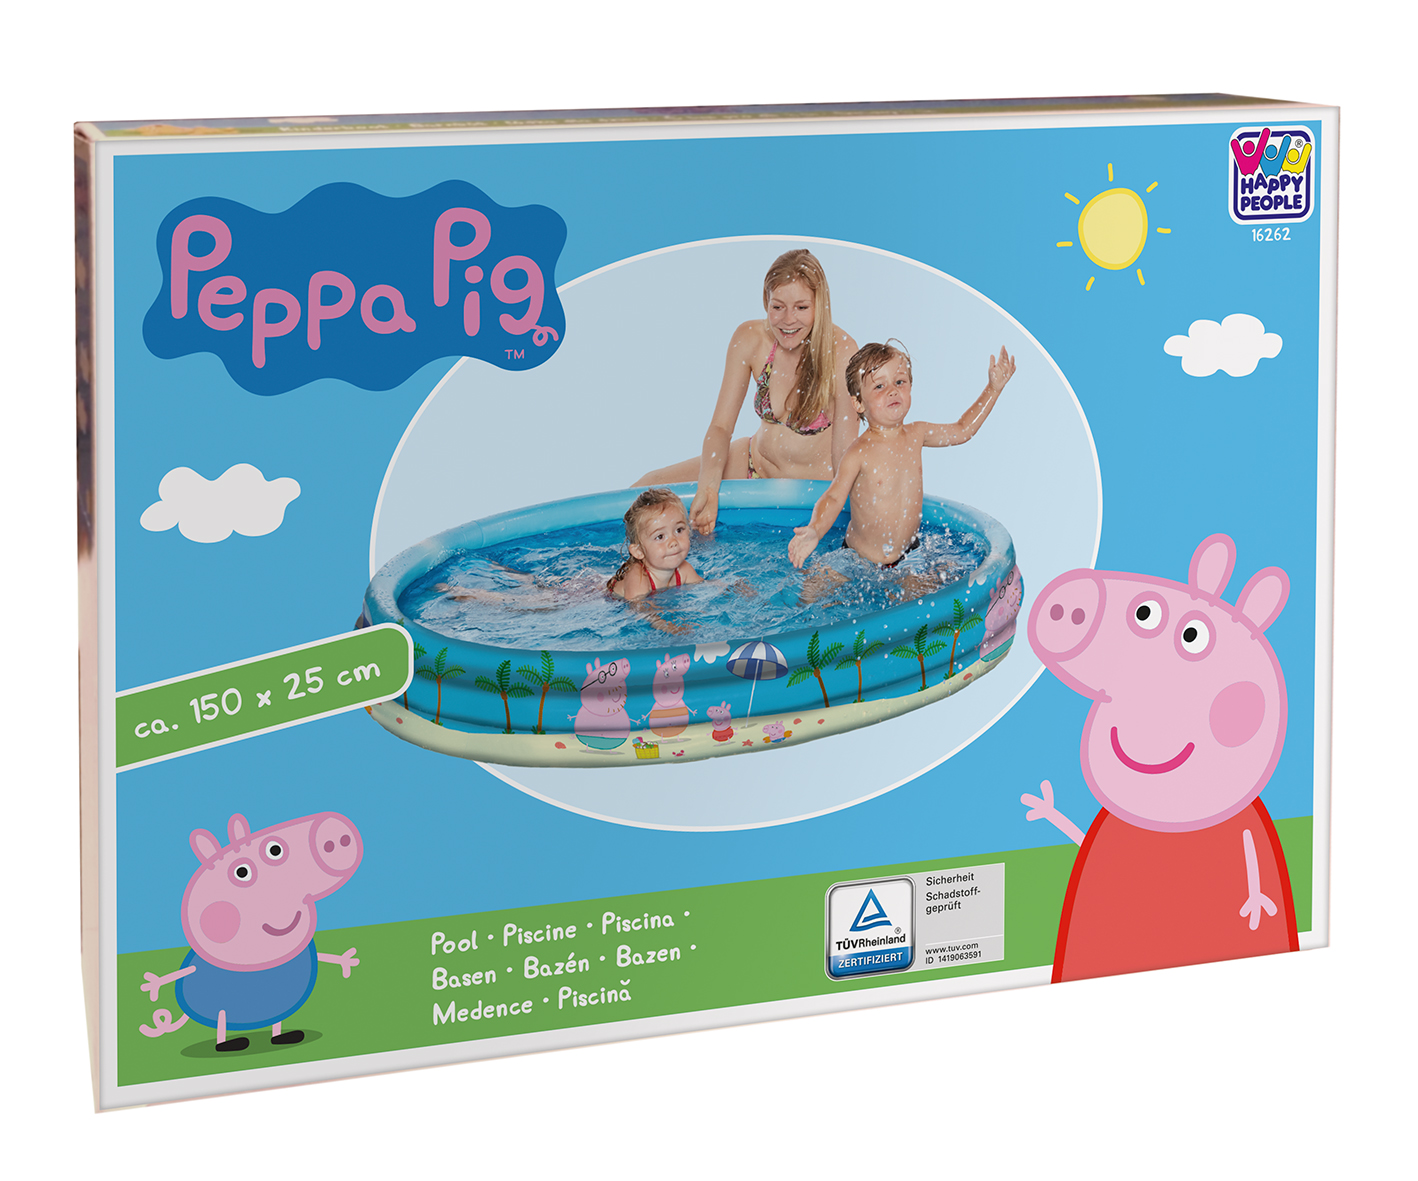 Happy People Peppa Pig 3-Ring-Pool, 150 x 25 cm